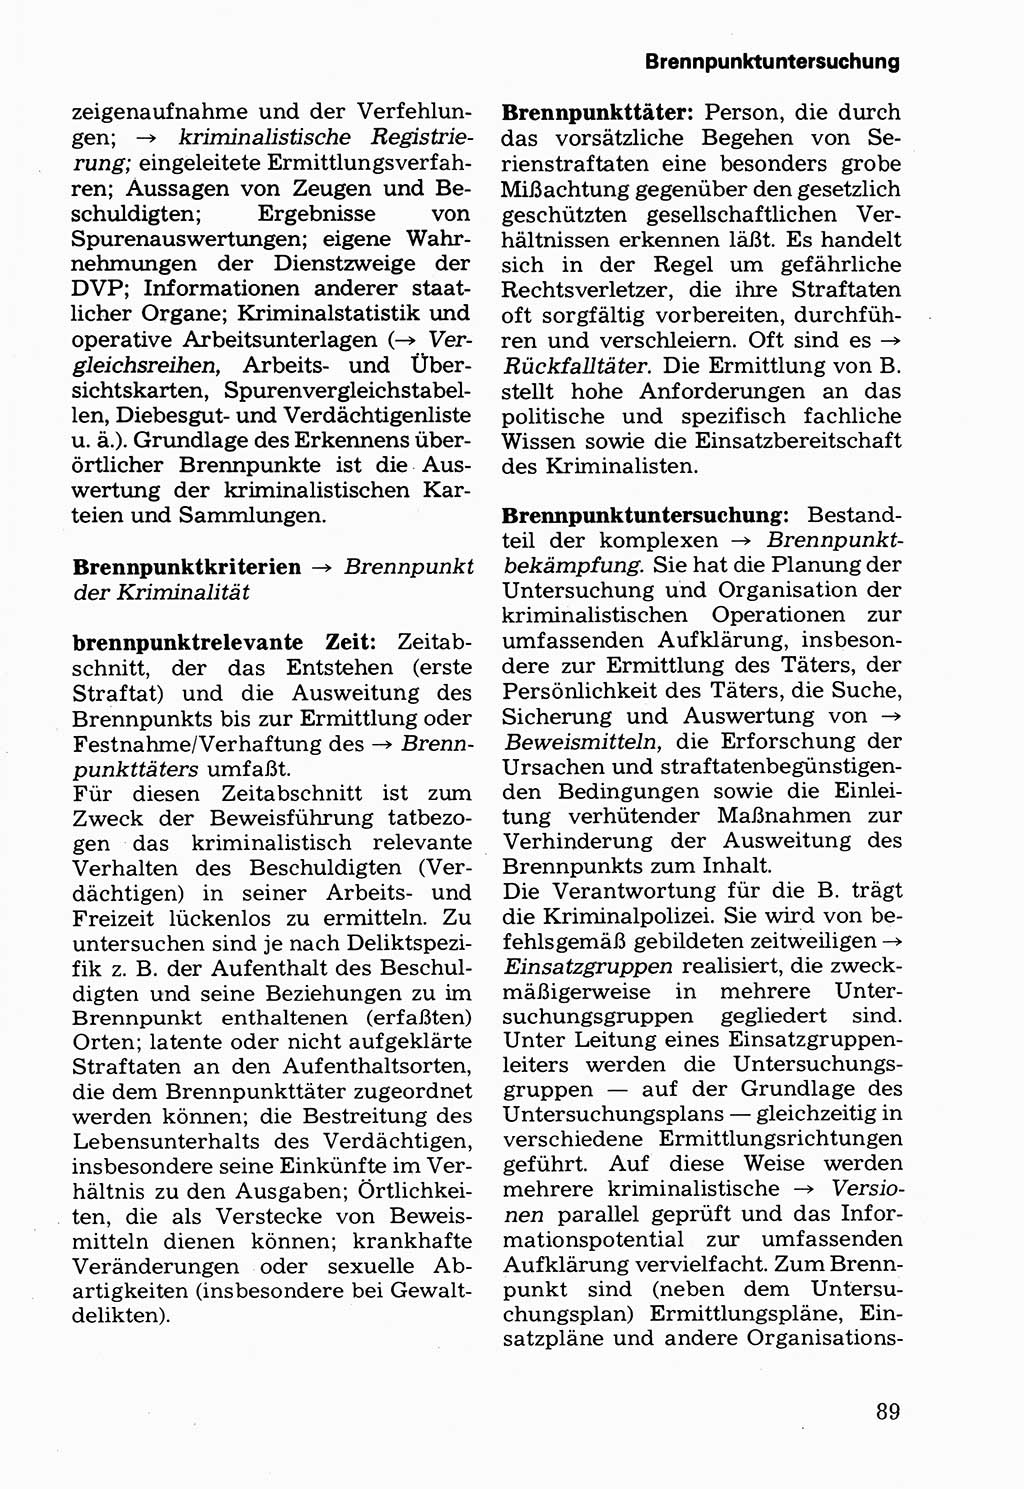 Wörterbuch der sozialistischen Kriminalistik [Deutsche Demokratische Republik (DDR)] 1981, Seite 89 (Wb. soz. Krim. DDR 1981, S. 89)